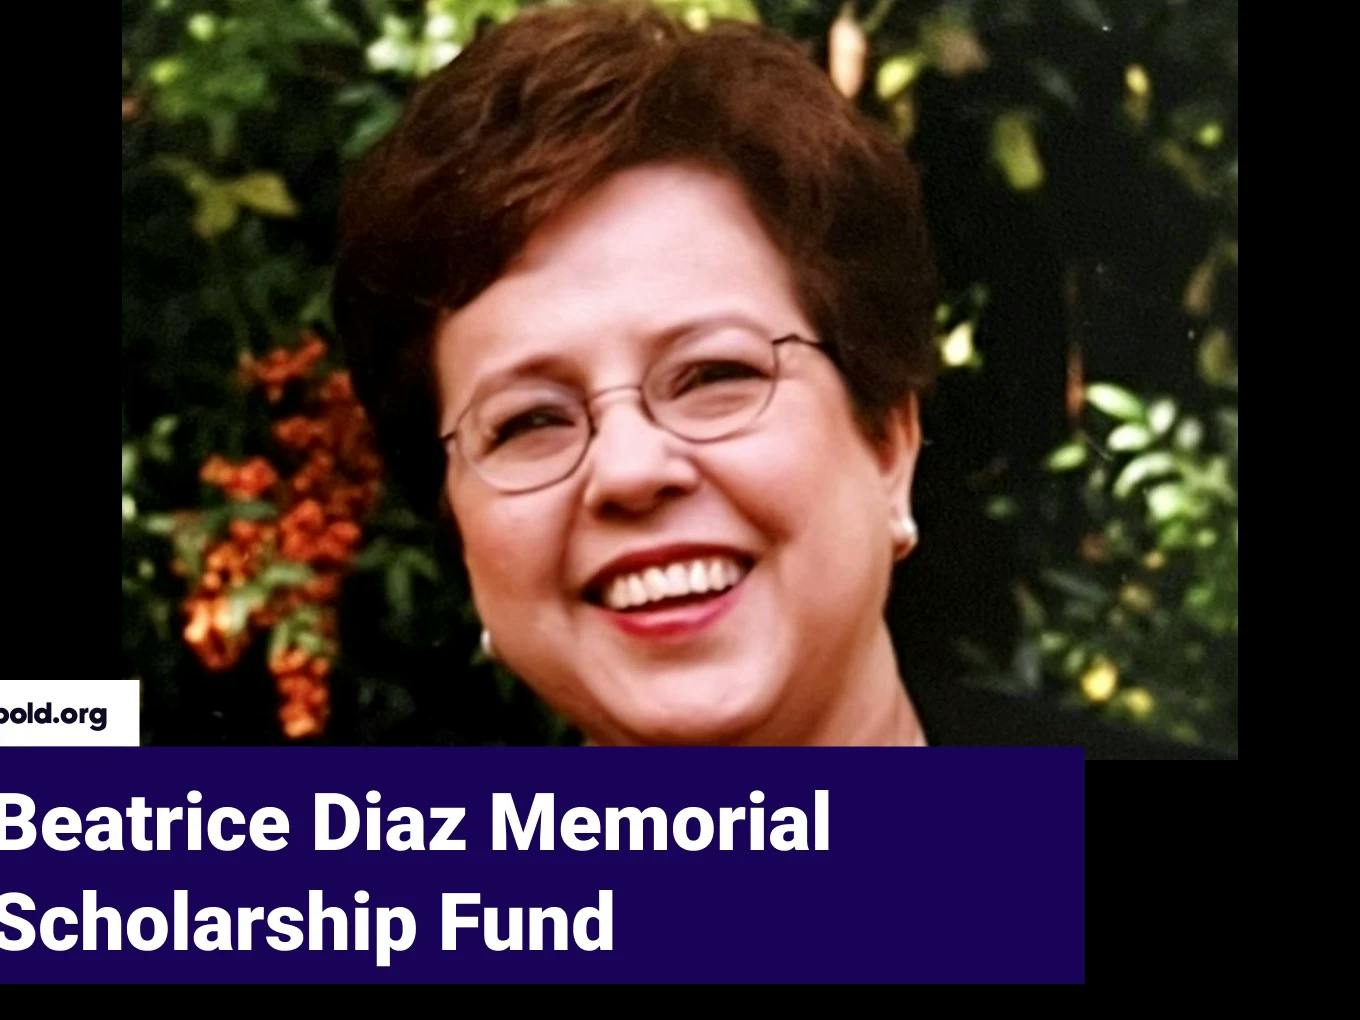 Beatrice Diaz Memorial Scholarship Fund